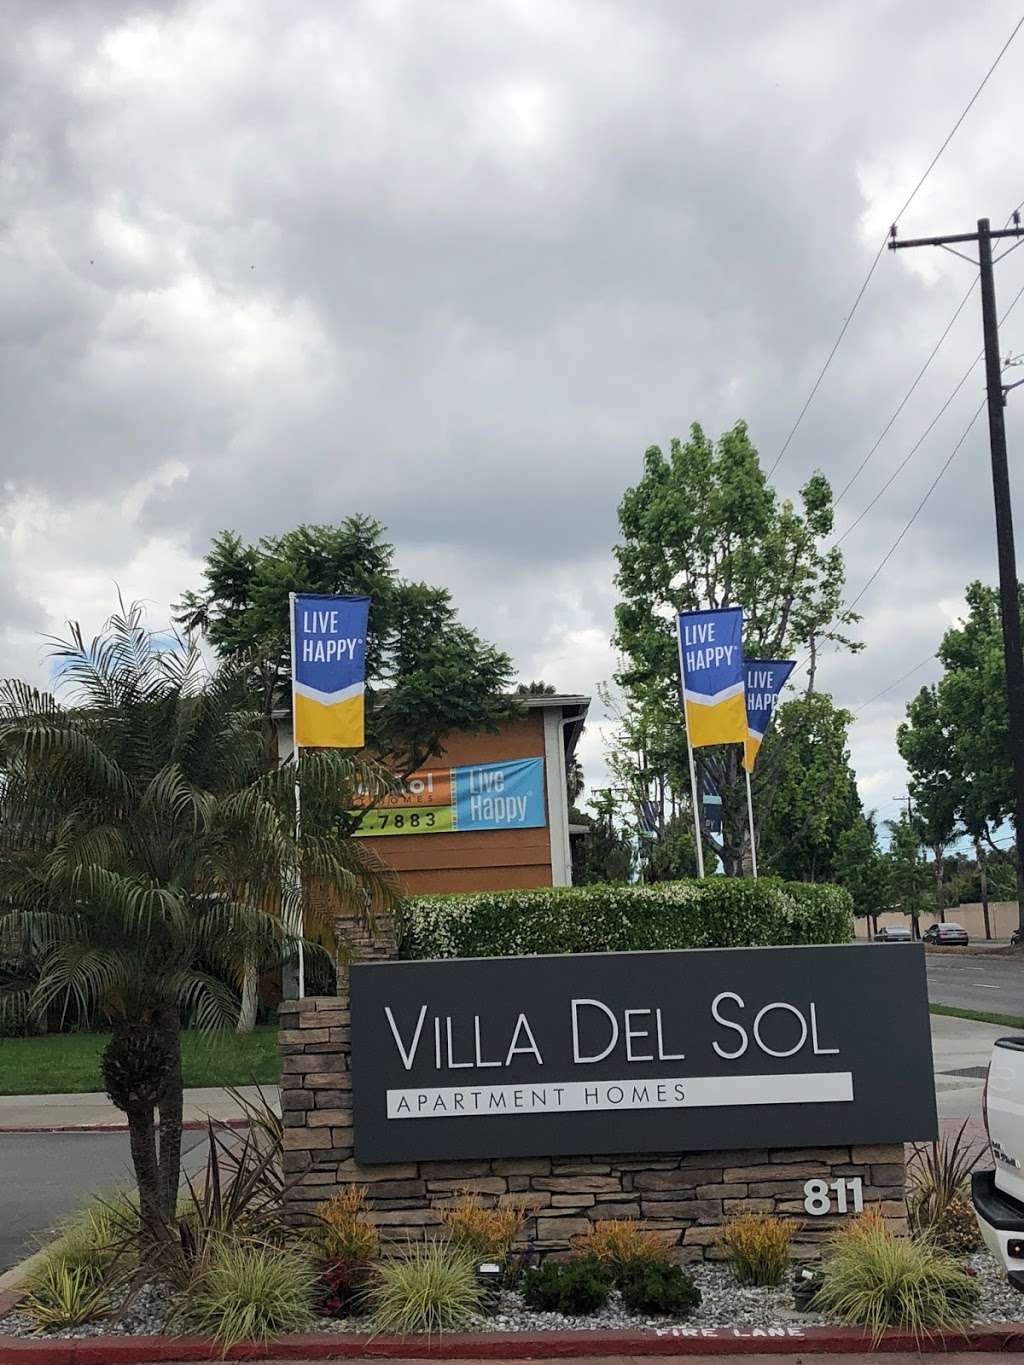 Villa Del Sol Apartments of Santa Ana | 811 S Fairview St, Santa Ana, CA 92704 | Phone: (714) 547-7485